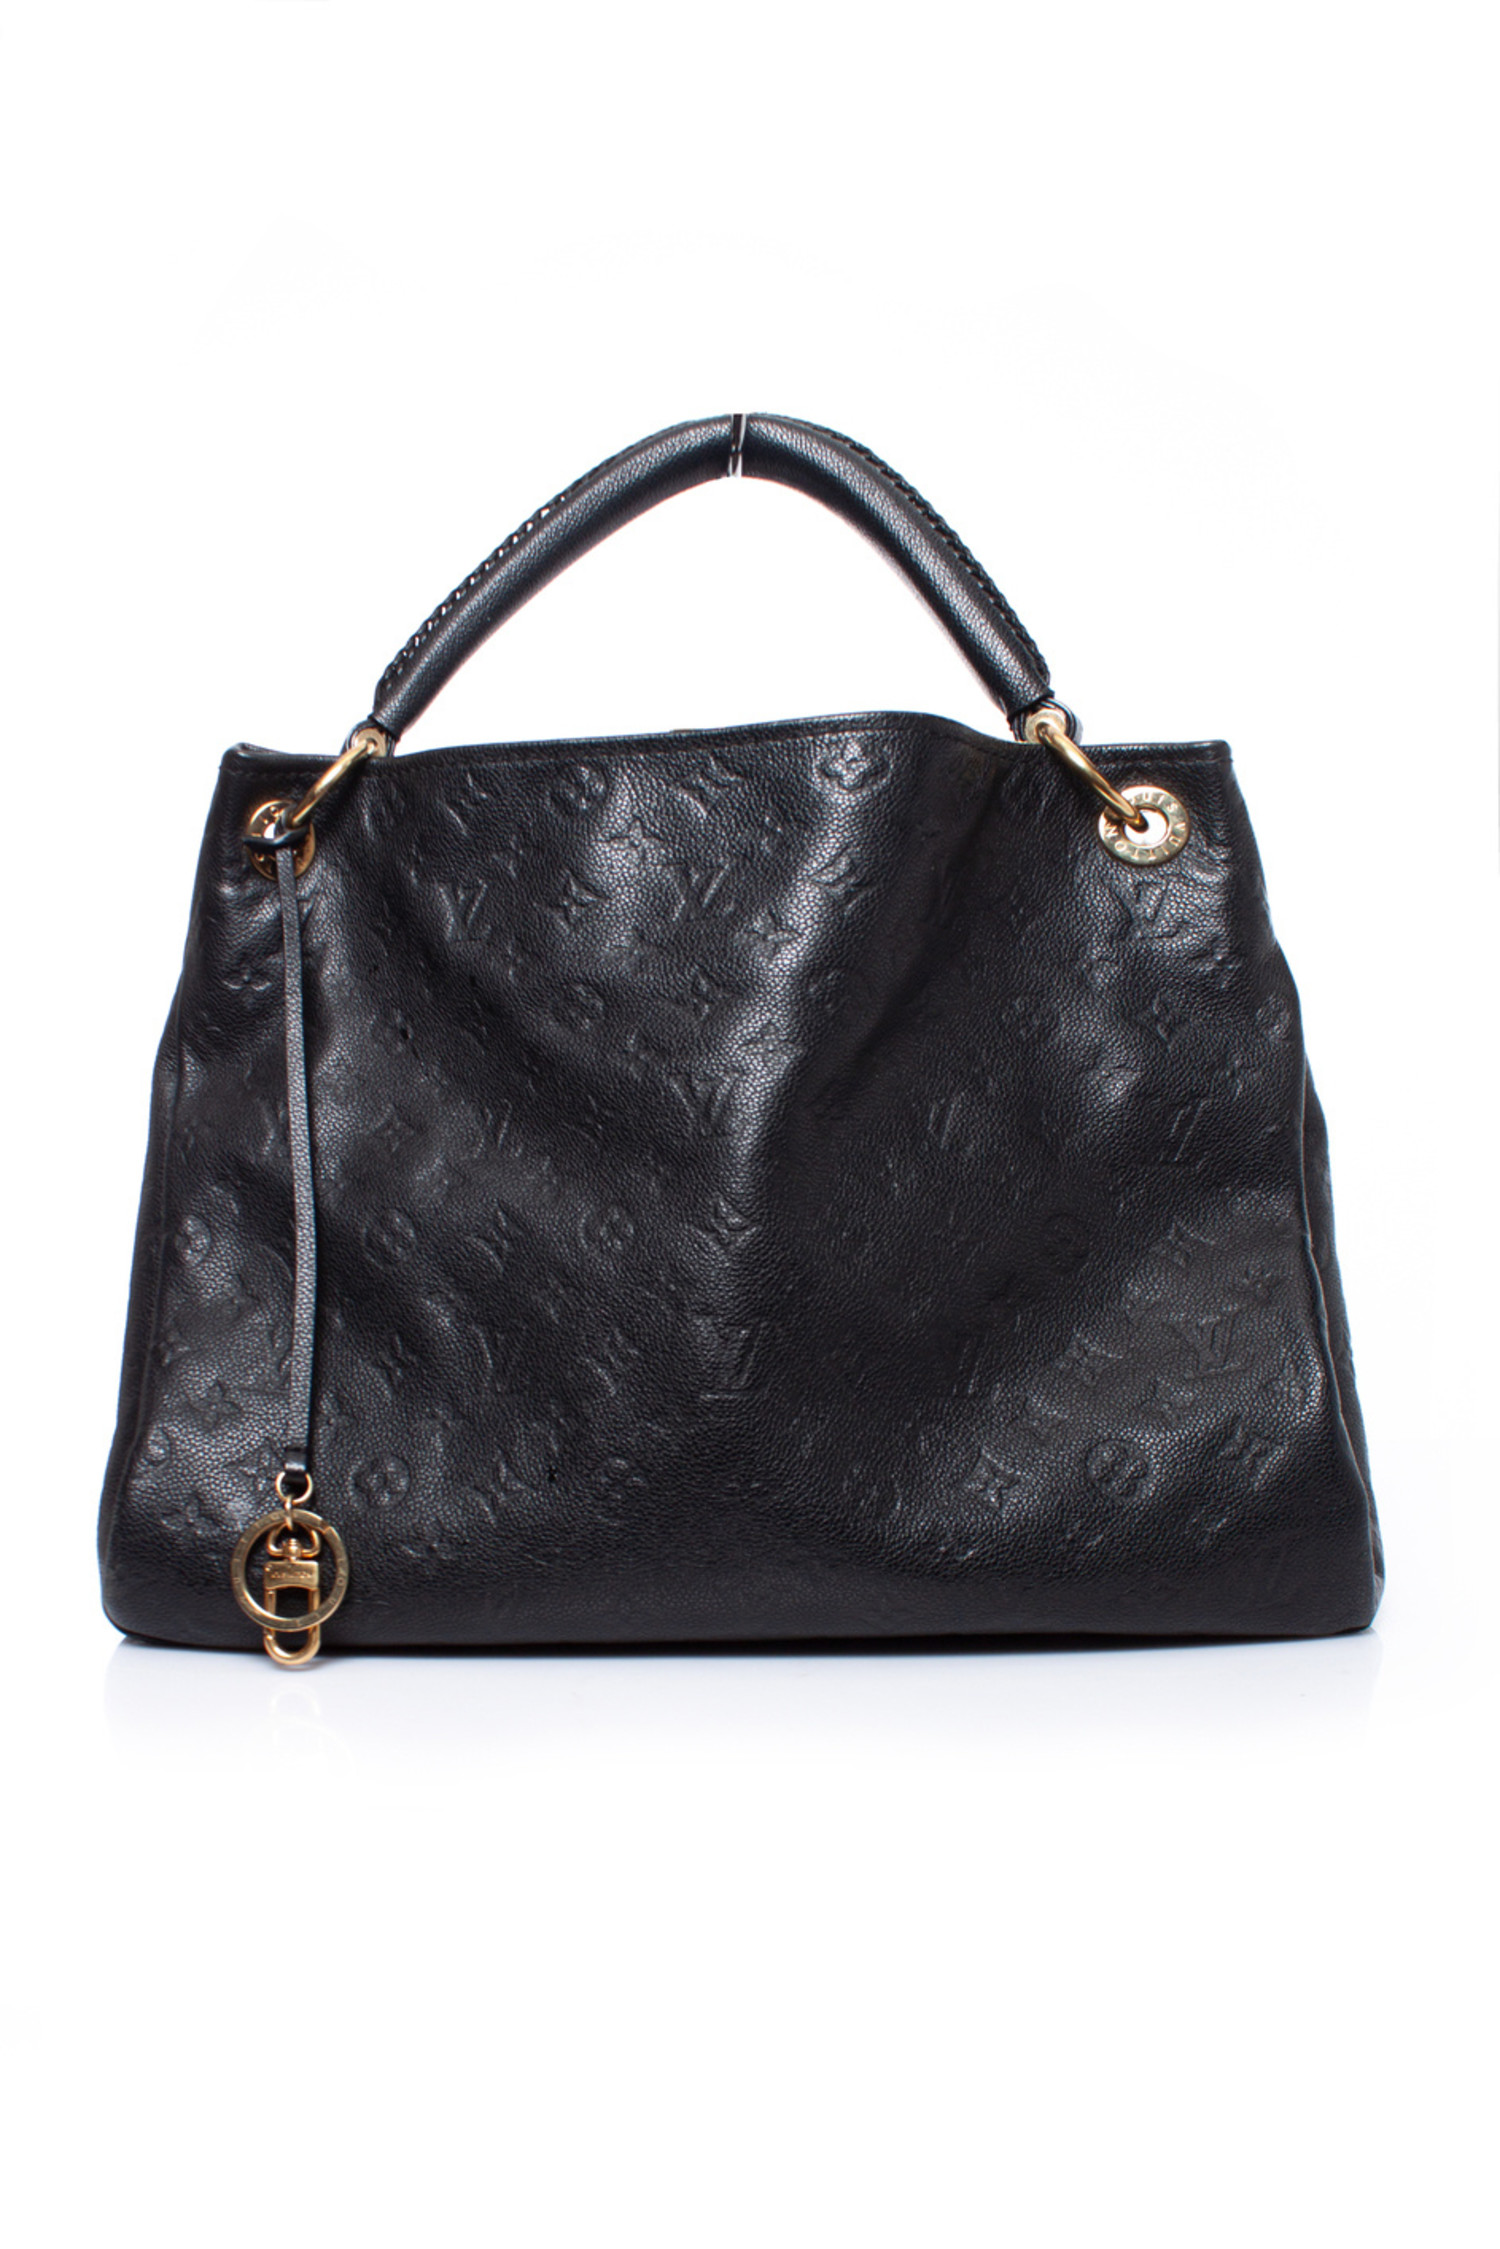 Louis Vuitton Black Monogram Leather Artsy MM Bag. - Unique